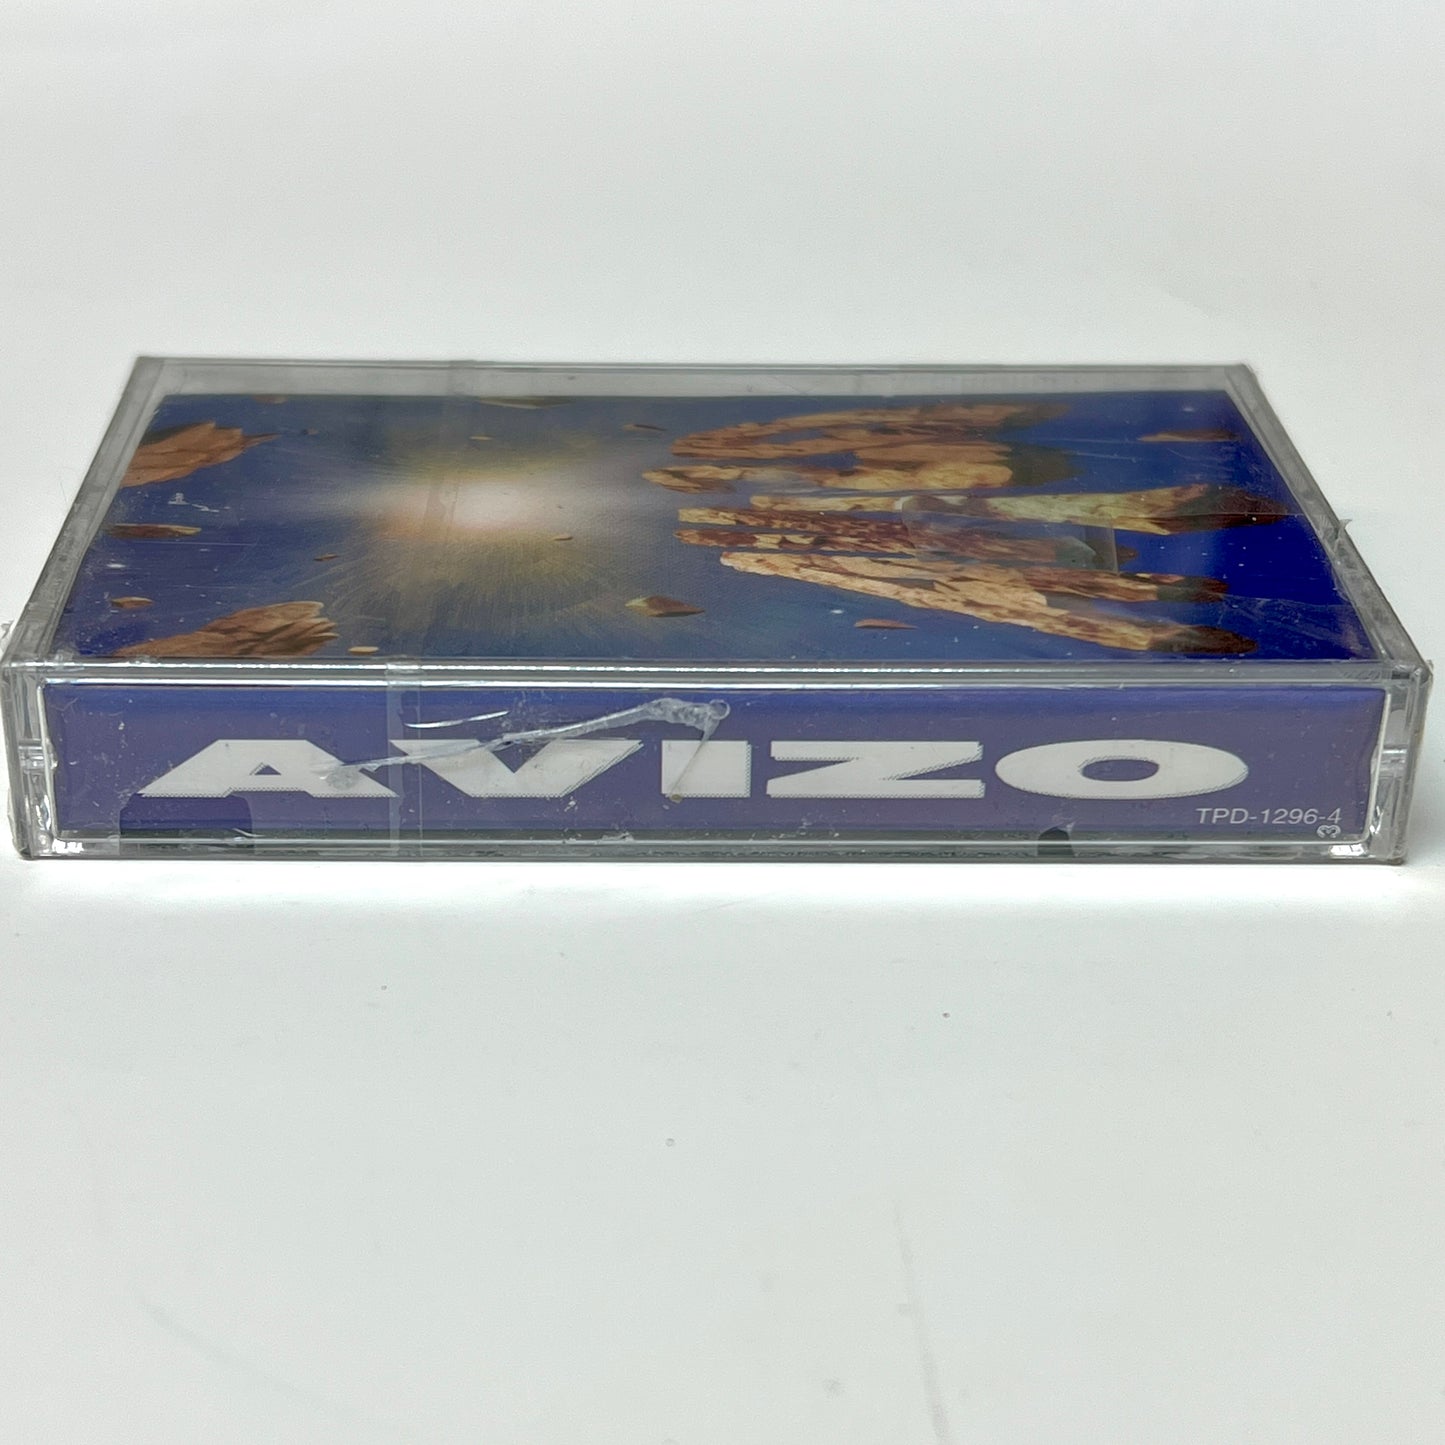 Avizo - Avizo (casete)